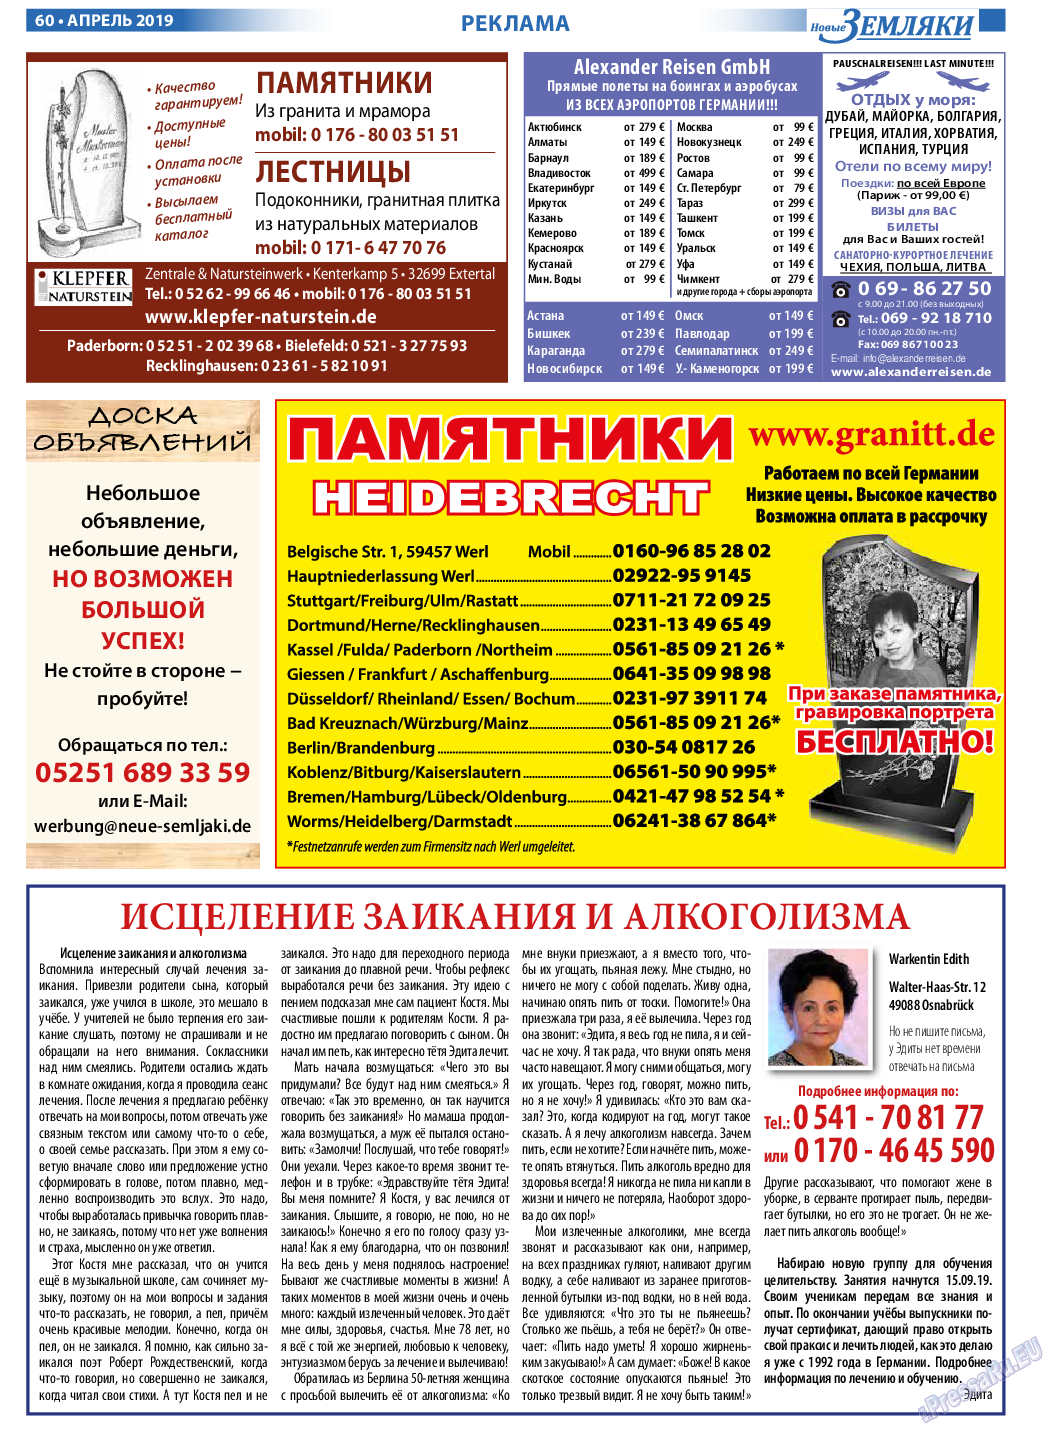 Новые Земляки (газета). 2019 год, номер 4, стр. 60